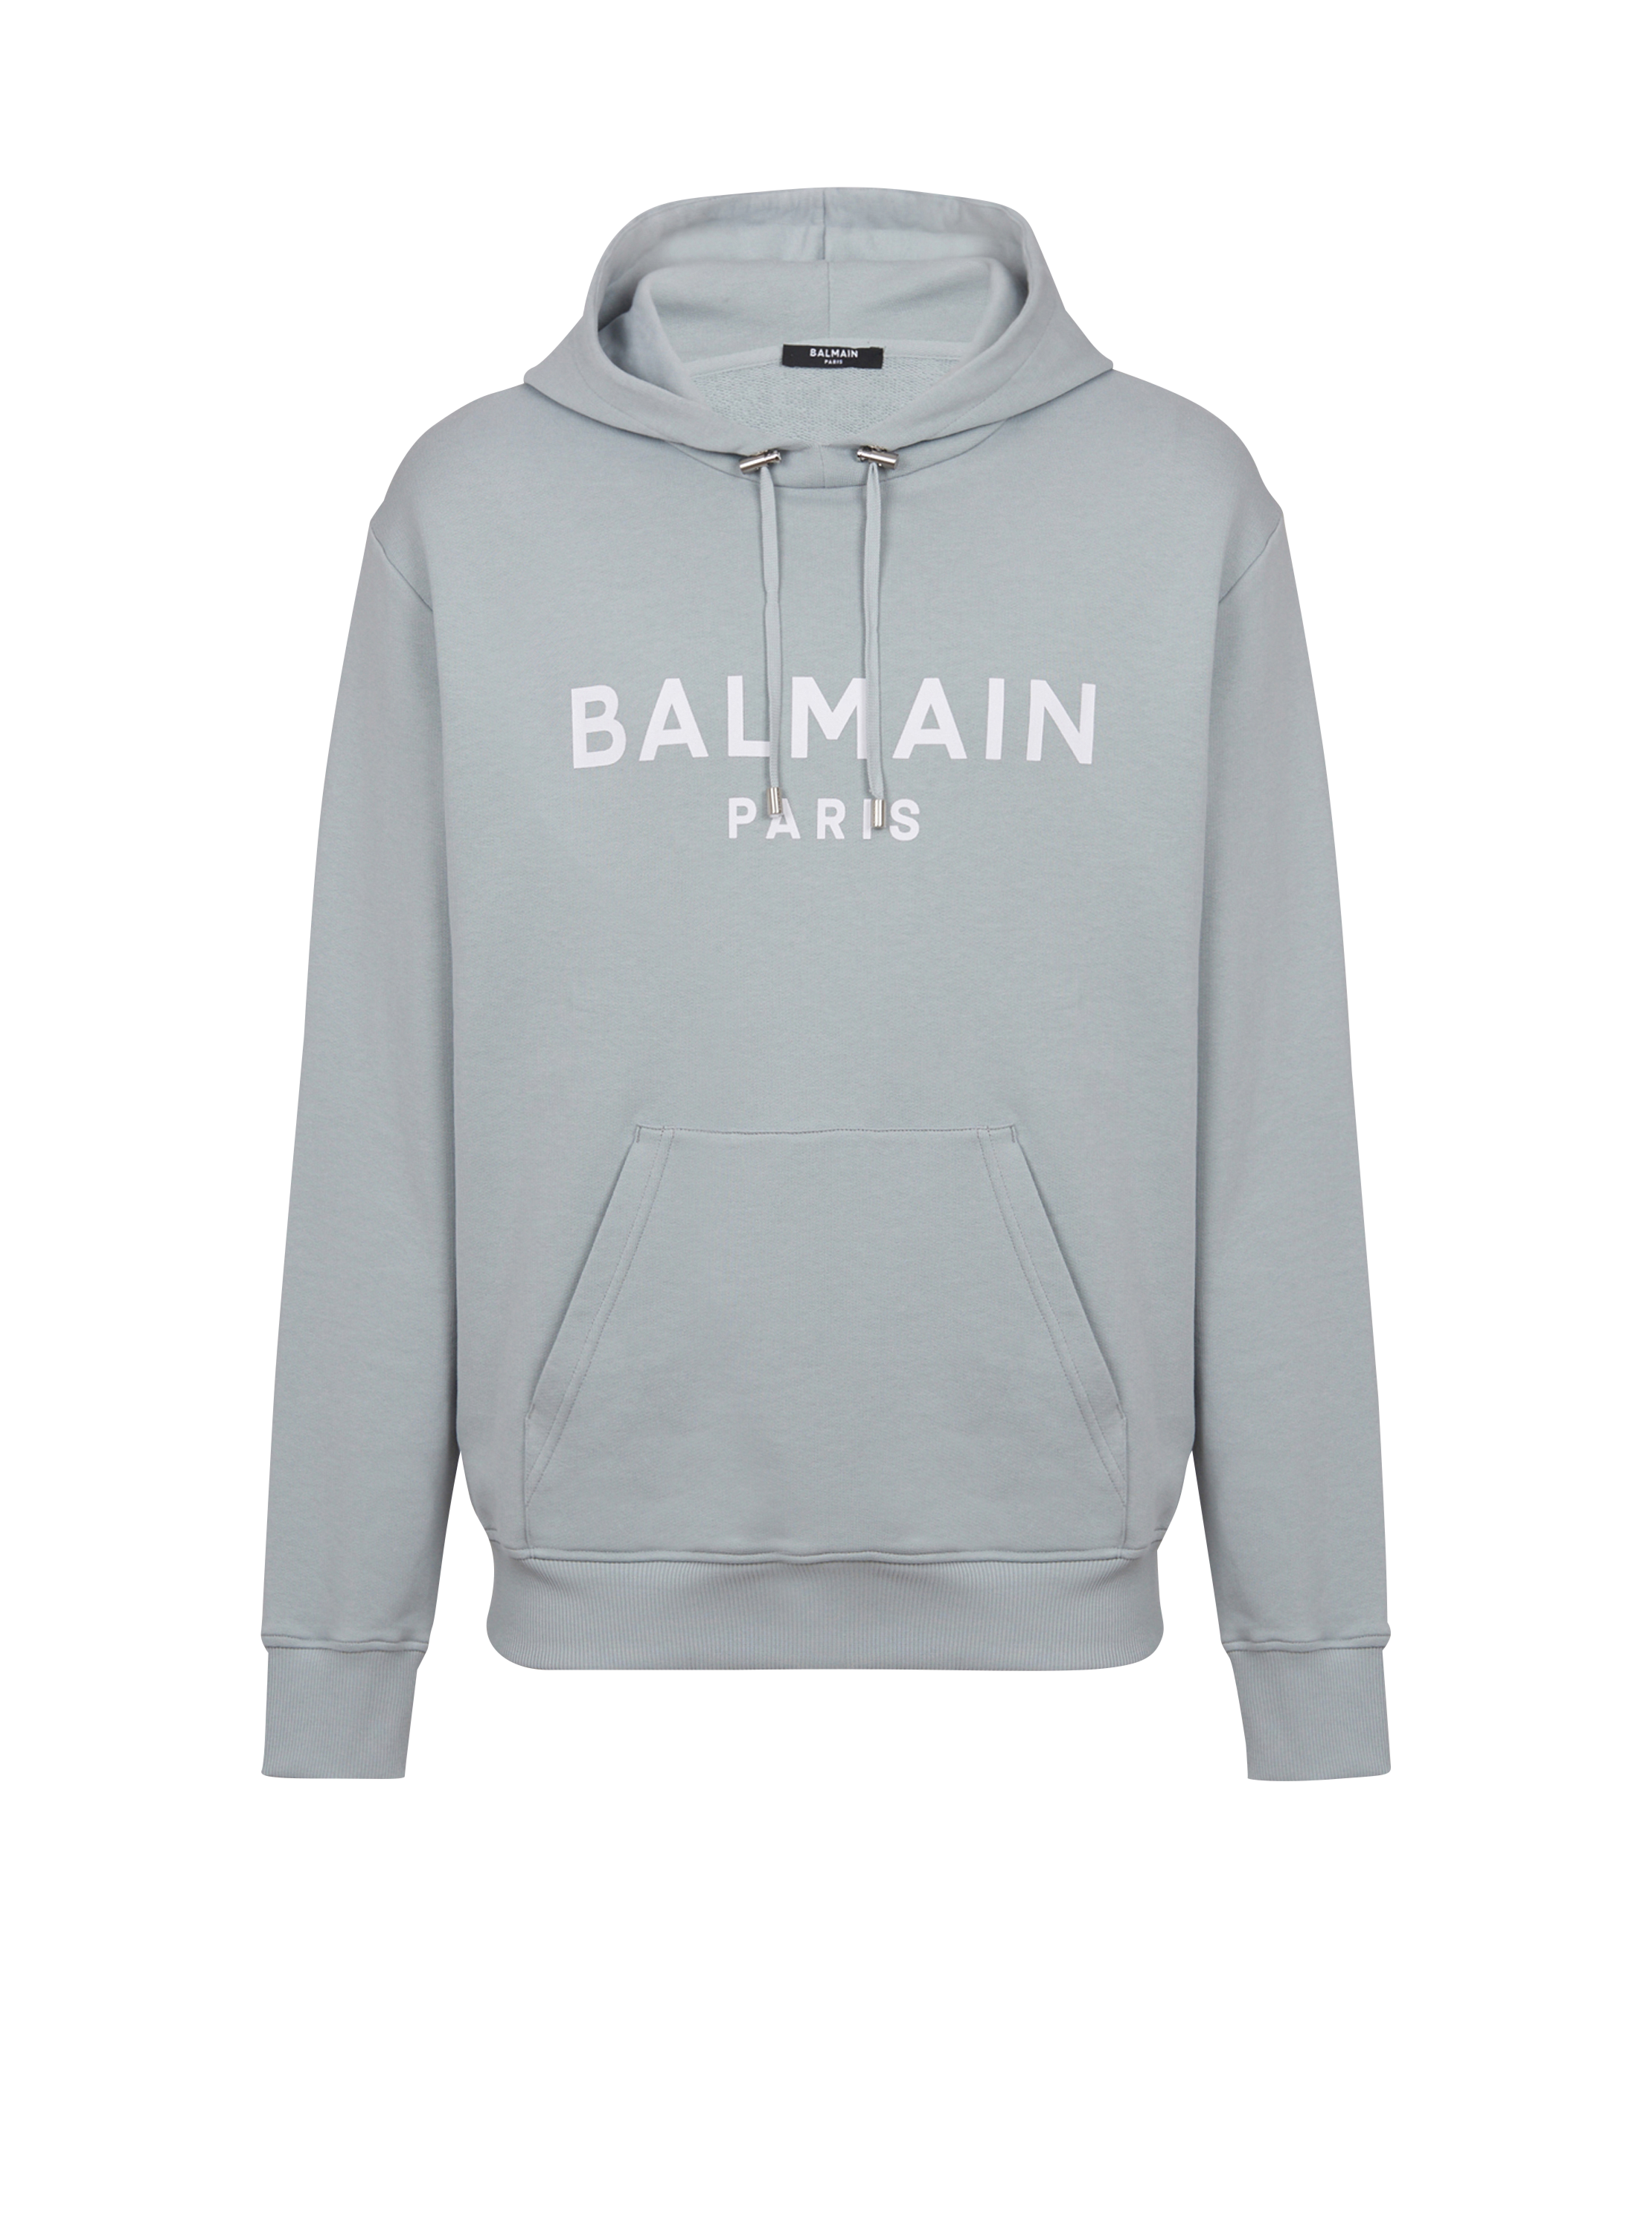 Printed Balmain Paris hoodie